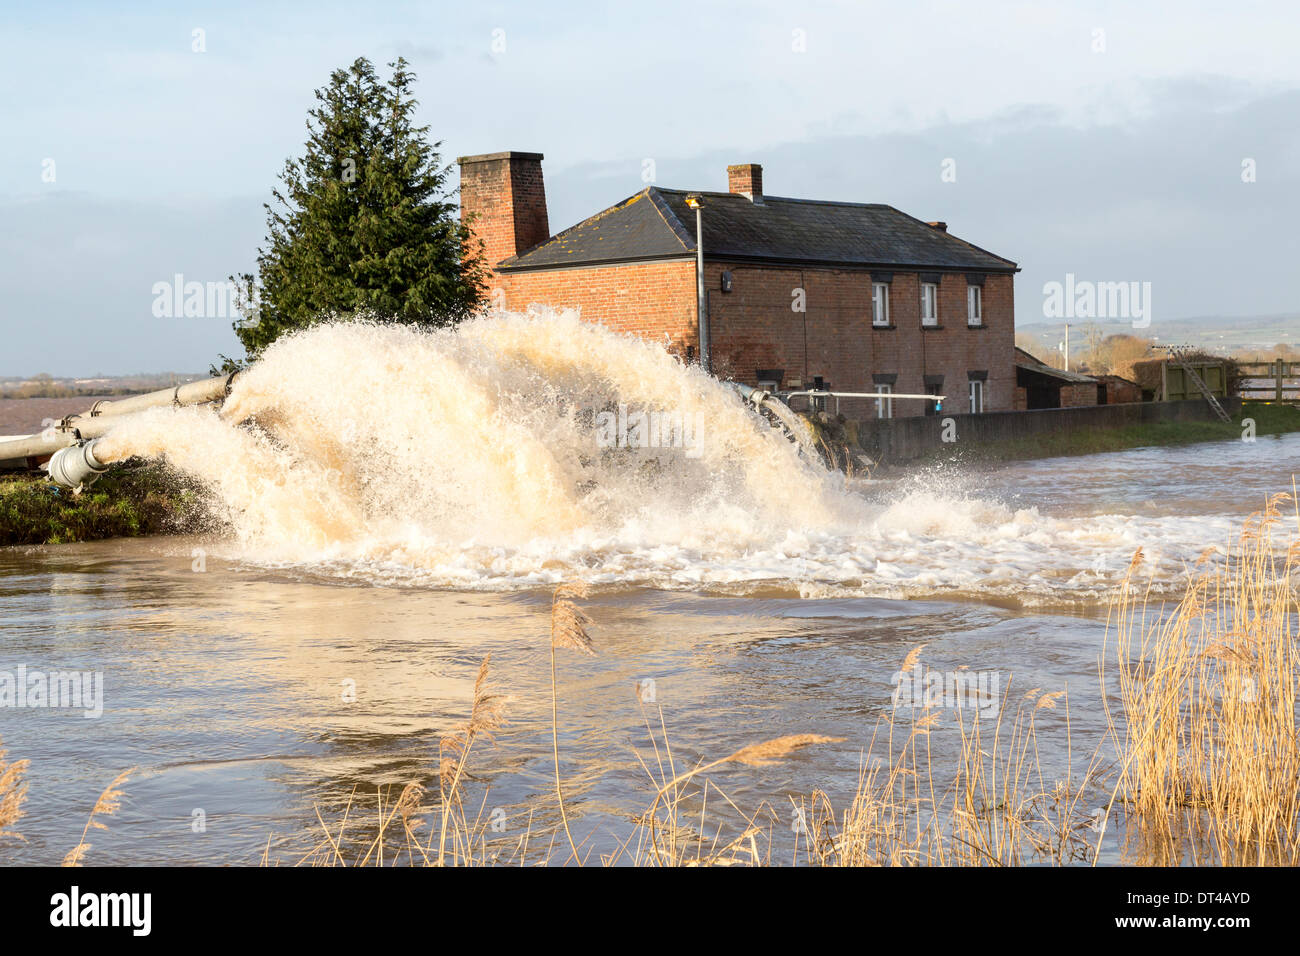 Les défenses contre les inondations dans le village de Burrowbridge dans Somerset on 8 février 2014. En raison de fortes pluies, la rivière Parrett a été incapable de faire face au volume d'eau et a inondé les terres agricoles à proximité des maisons laissant sous l'eau. L'Agence de l'Environnement ont rédigé des pompes supplémentaires pour aider la station de pompage d Saltmoor faire face à l'énorme volume d'eau mais une grave alerte inondation demeure et certains occupants a dit d'évacuer. © Nick Cable/Alamy Live News Crédit : Nick Cable/Alamy Live News Banque D'Images